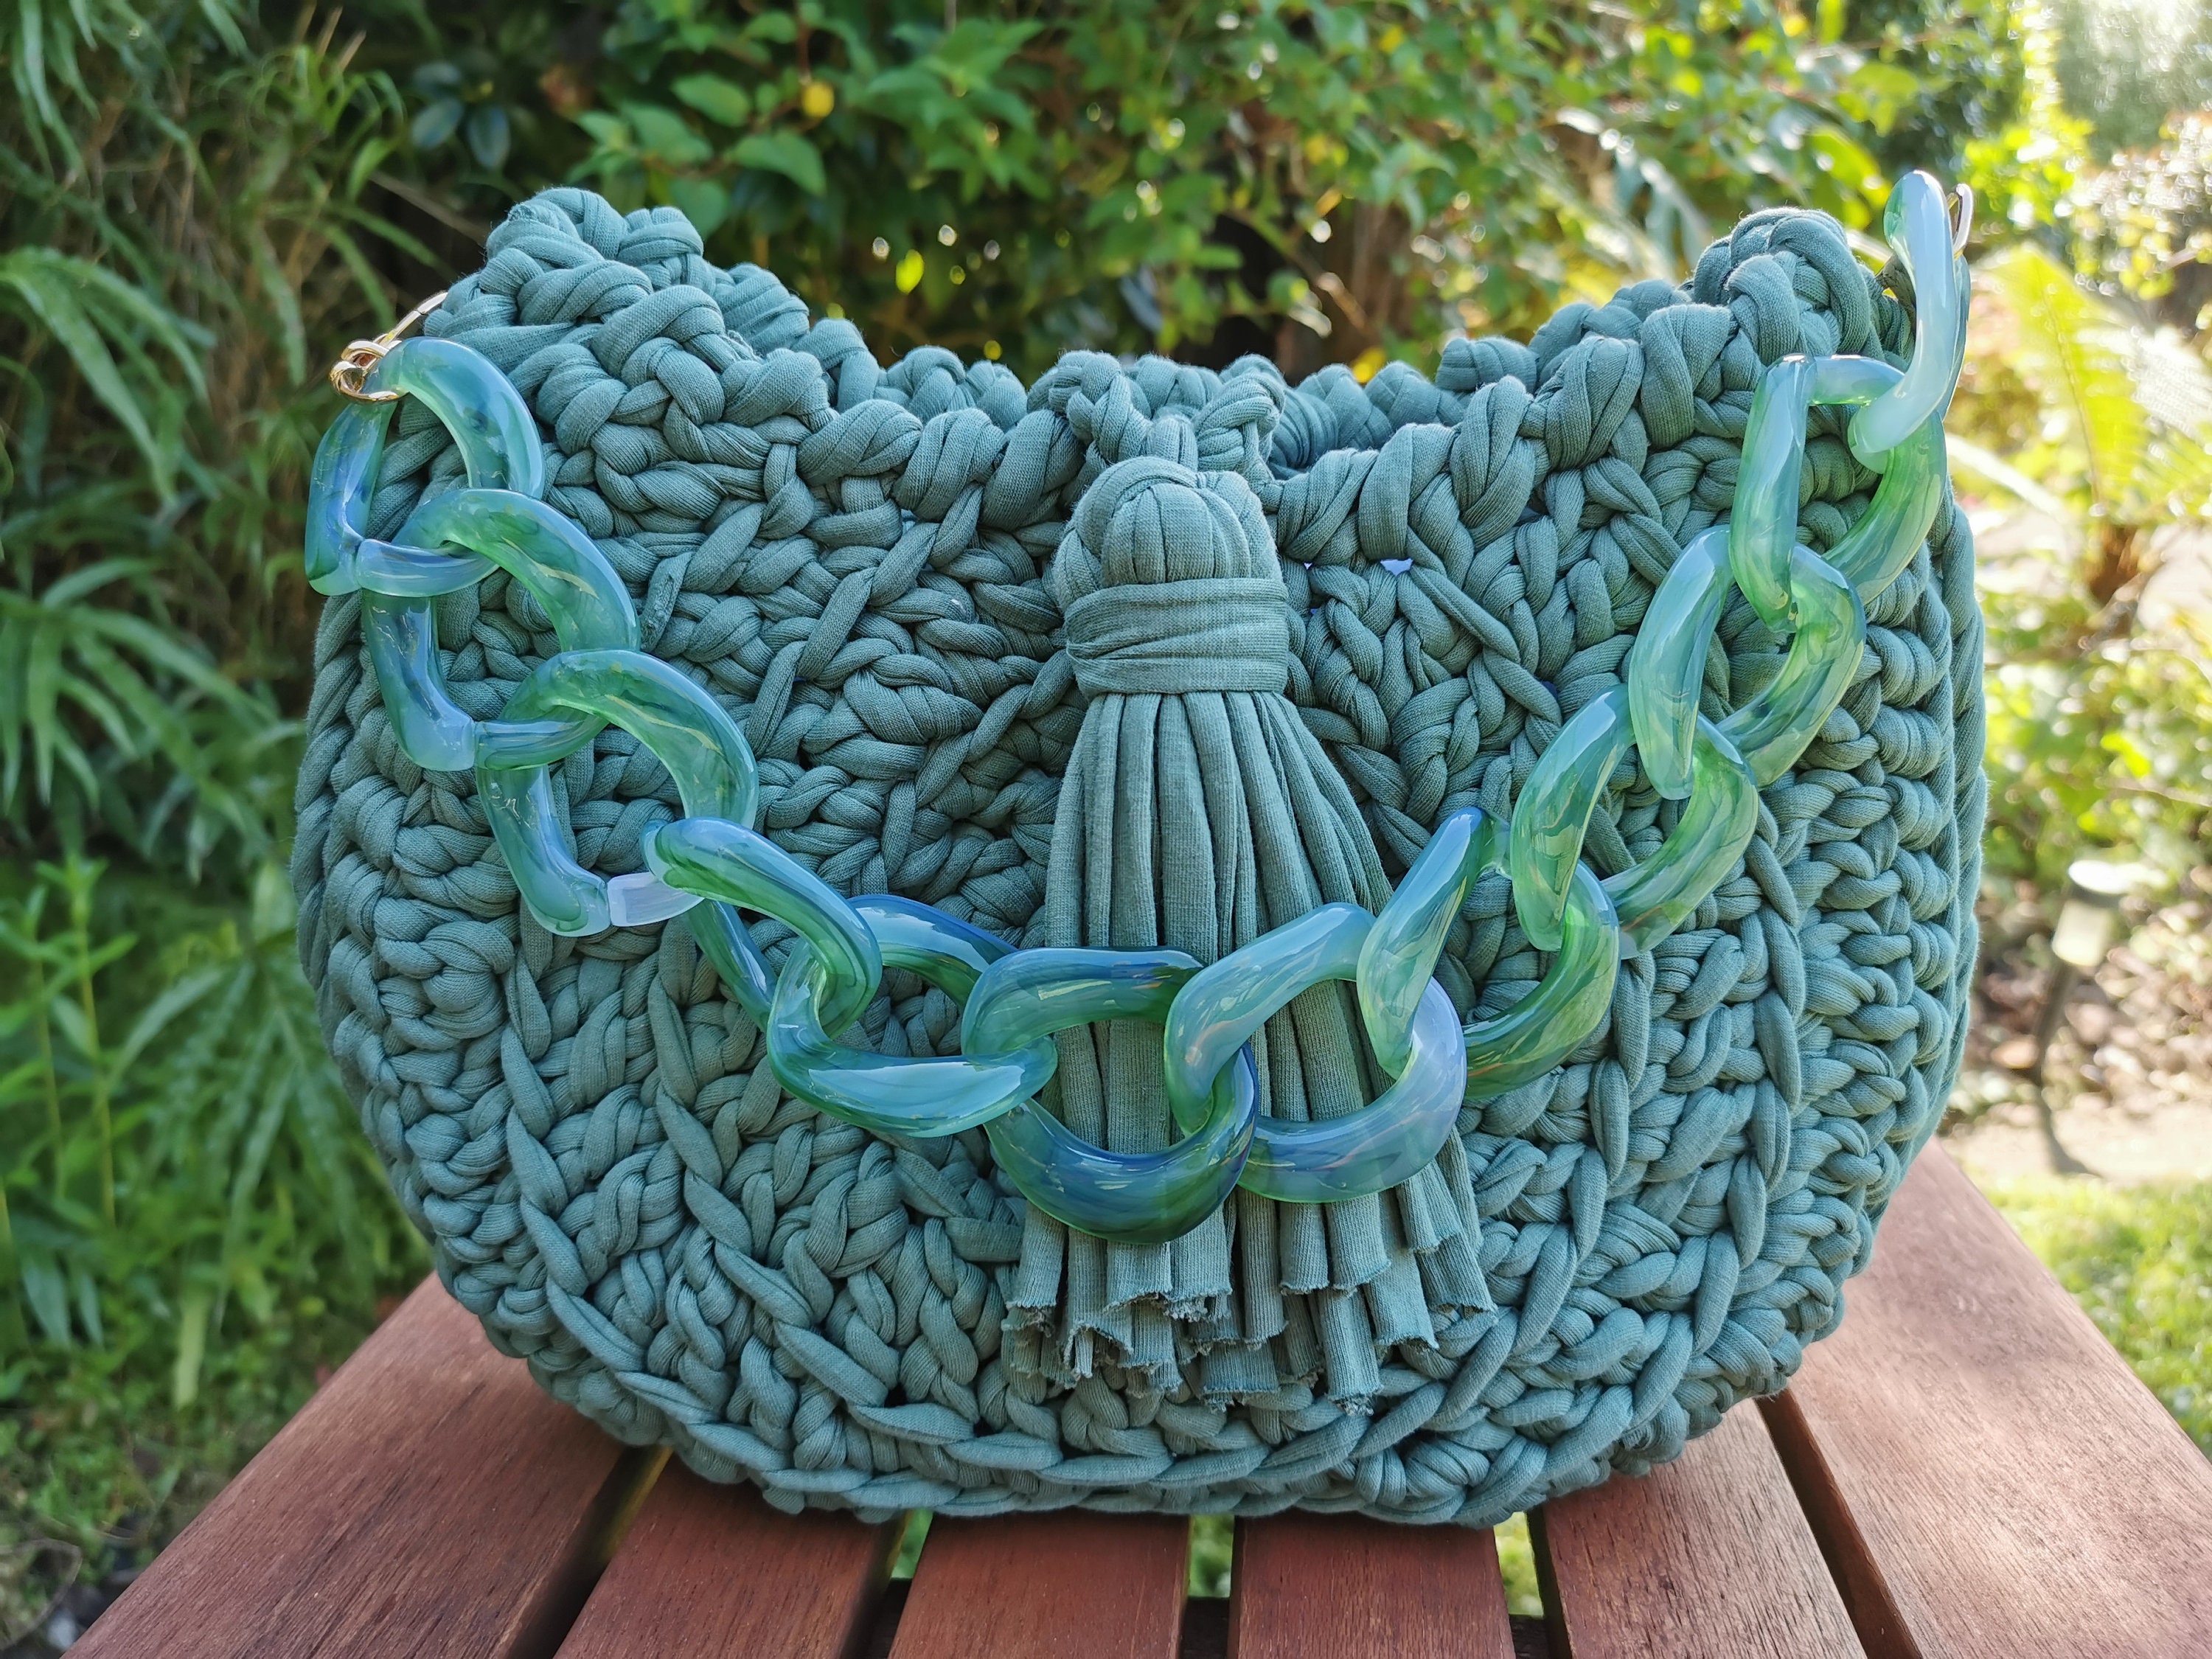 Crochet Clutch Using TShirt Yarn and Giant Tassel : r/crochet